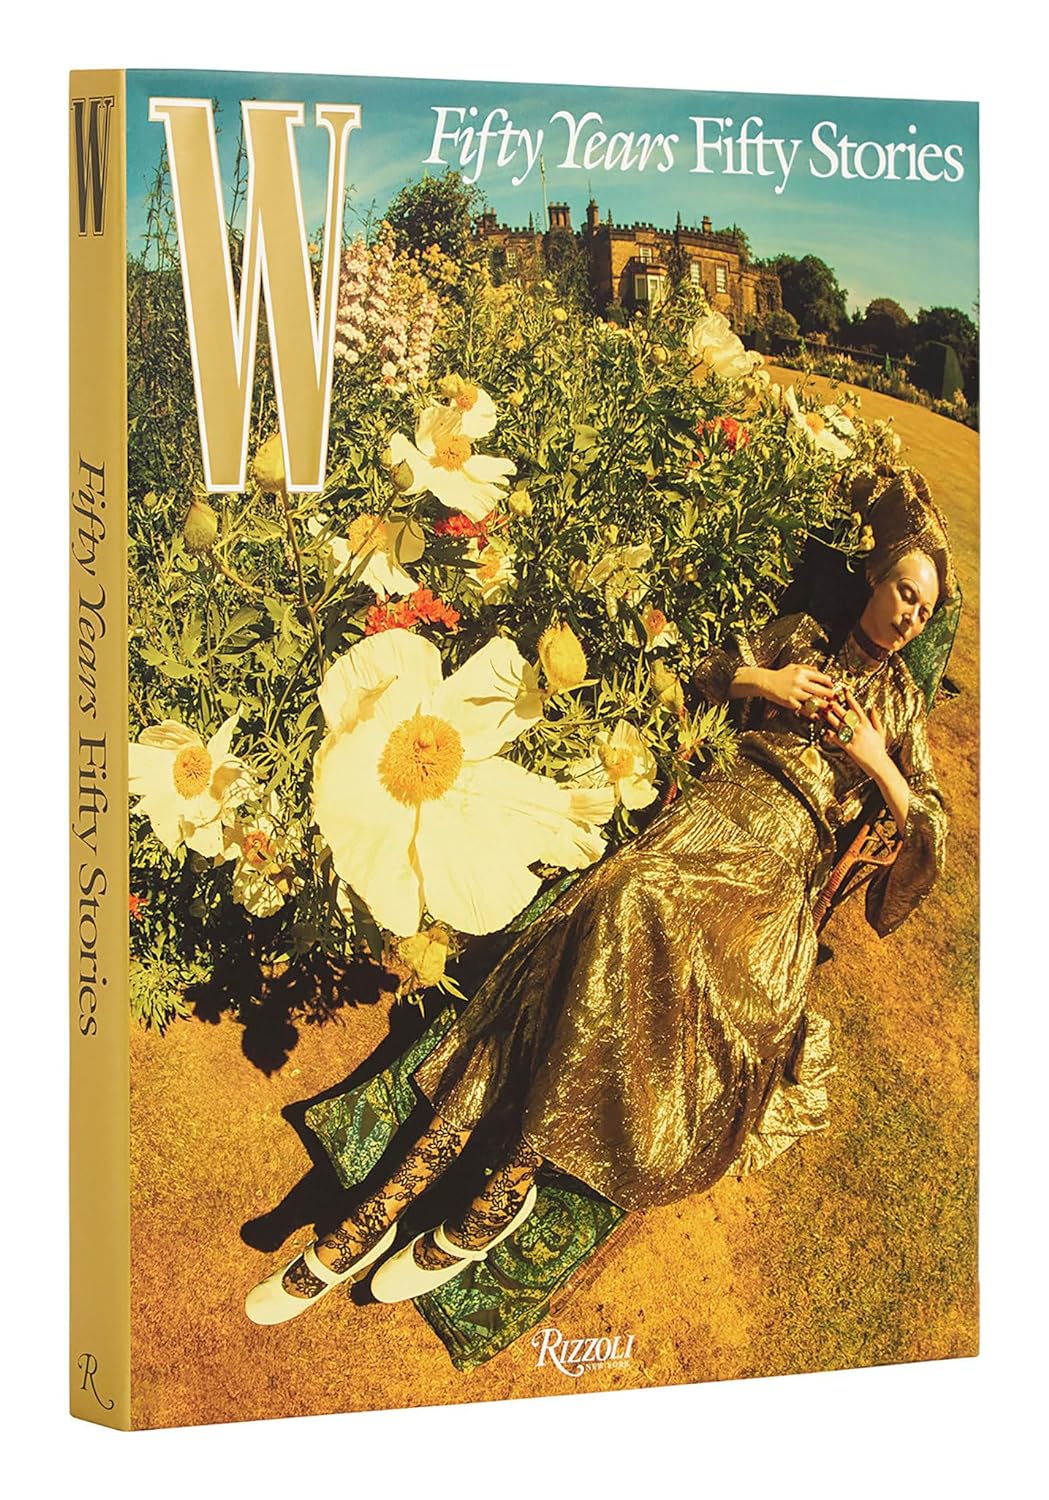 W Magazine: 50 Years/50 Stories